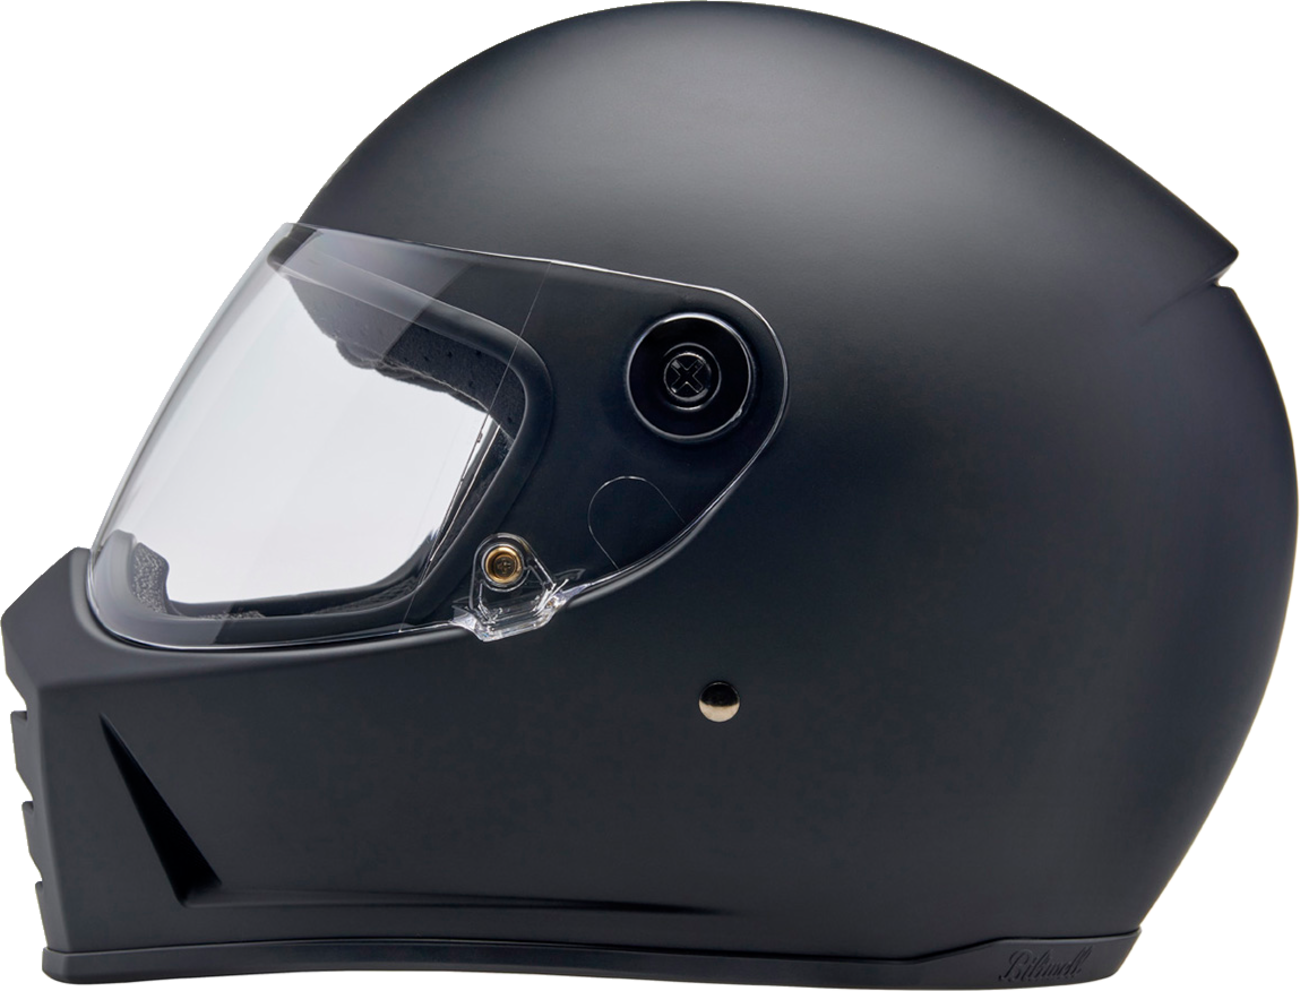 BILTWELL Lane Splitter Helmet - Flat Black - XS 1004-201-501